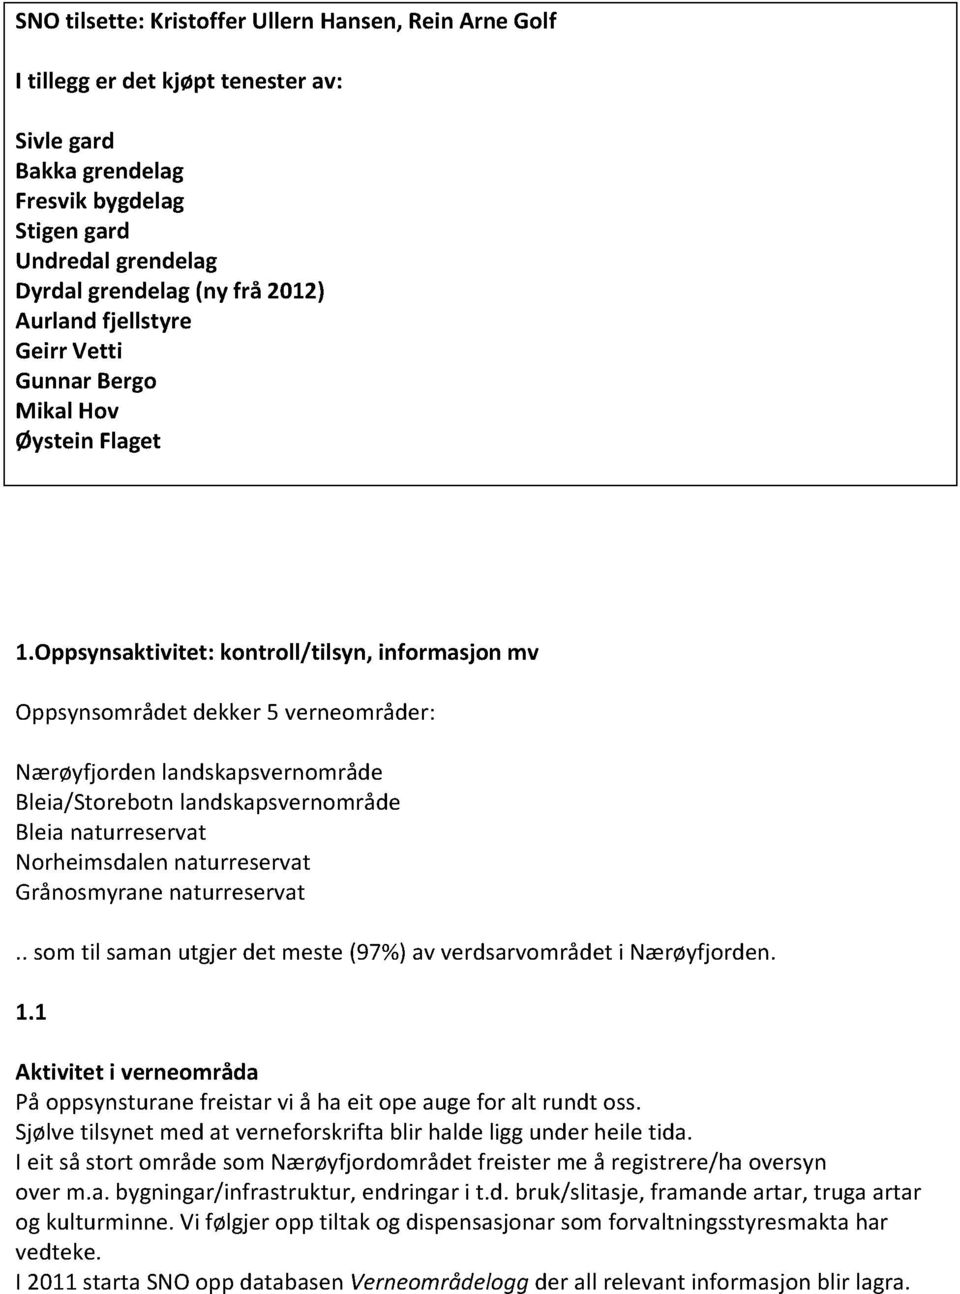 Oppsynsaktivitet:kontroll/tilsyn, informasjonmv Oppsynsområdetdekker5 verneområder: Nærøyfjorden landskapsvernområde Bleia/Storebotnlandskapsvernområde Bleianaturreservat Norheimsdalennaturreservat